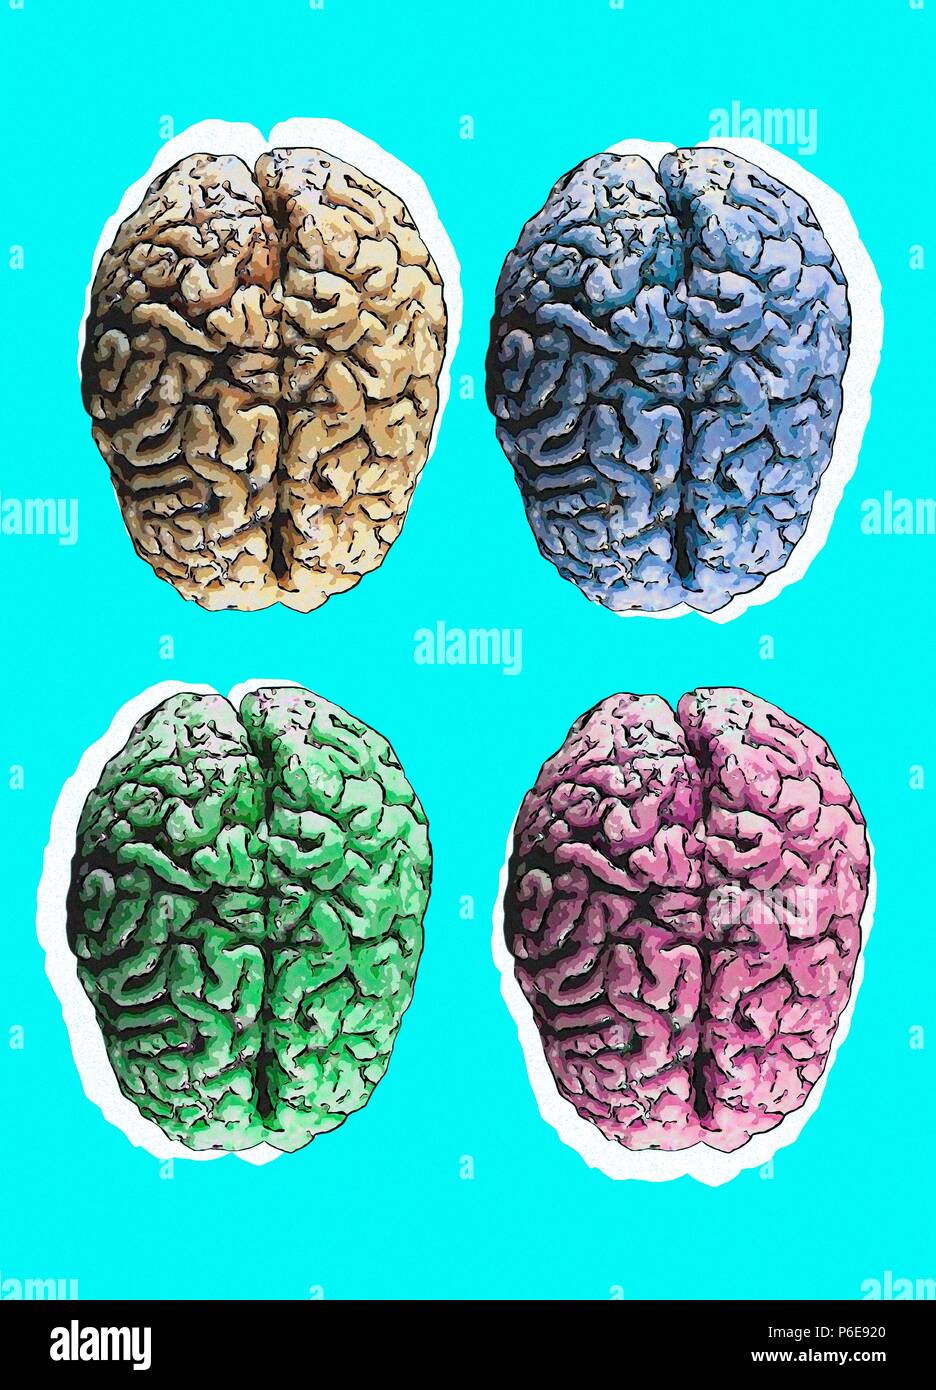 Menschliche Gehirne vor blauem Hintergrund, Illustration. Stockfoto